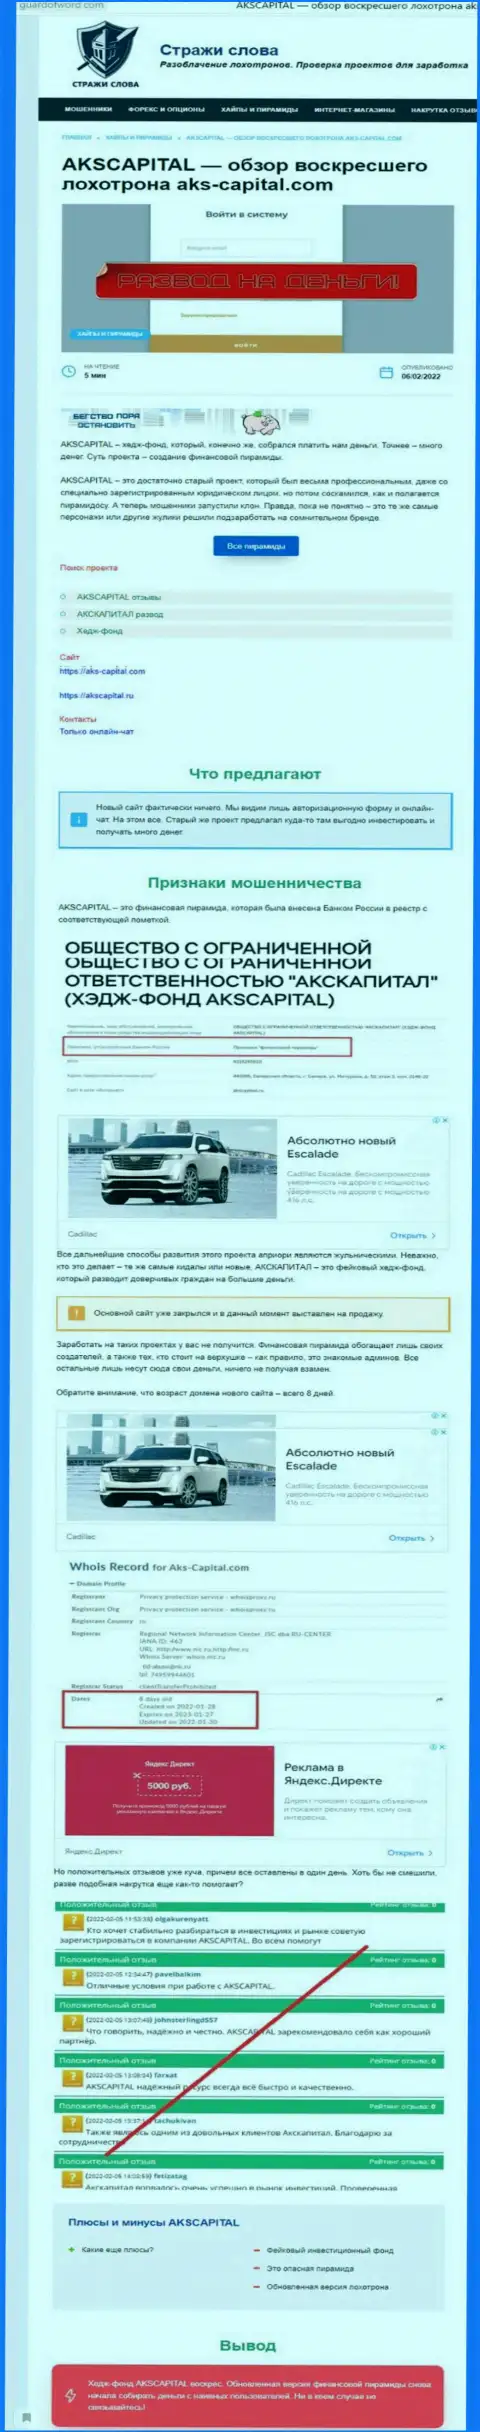 Советуем обходить AKS-Capital десятой дорогой, с данной компанией Вы не заработаете ни рубля (статья с обзором)